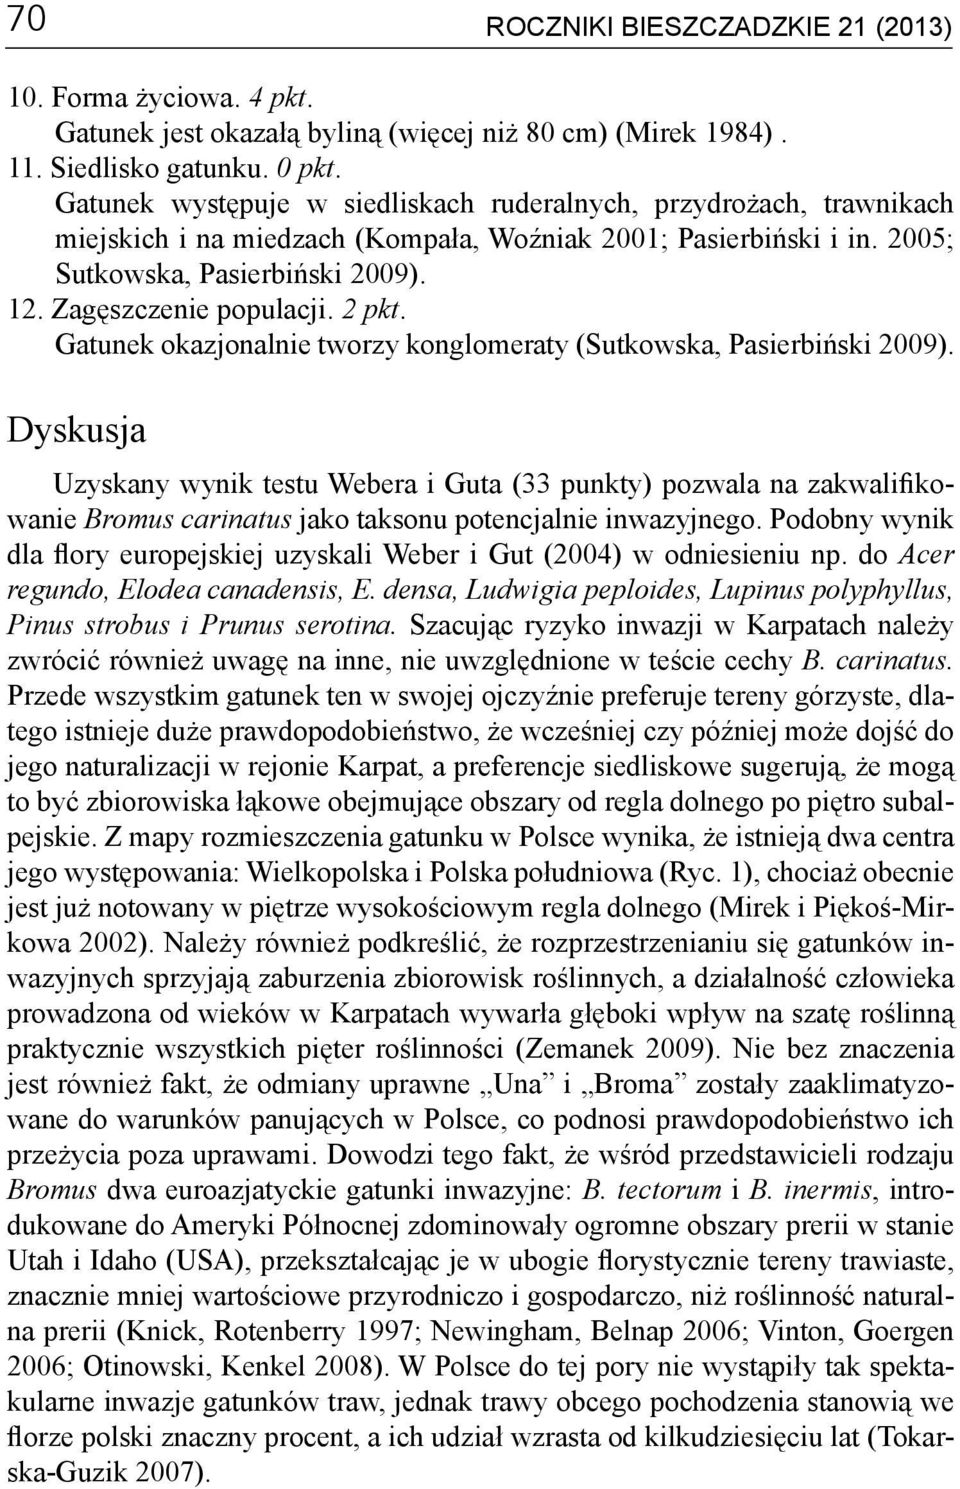 2 pkt. Gatunek okazjonalnie tworzy konglomeraty (Sutkowska, Pasierbiński 2009).